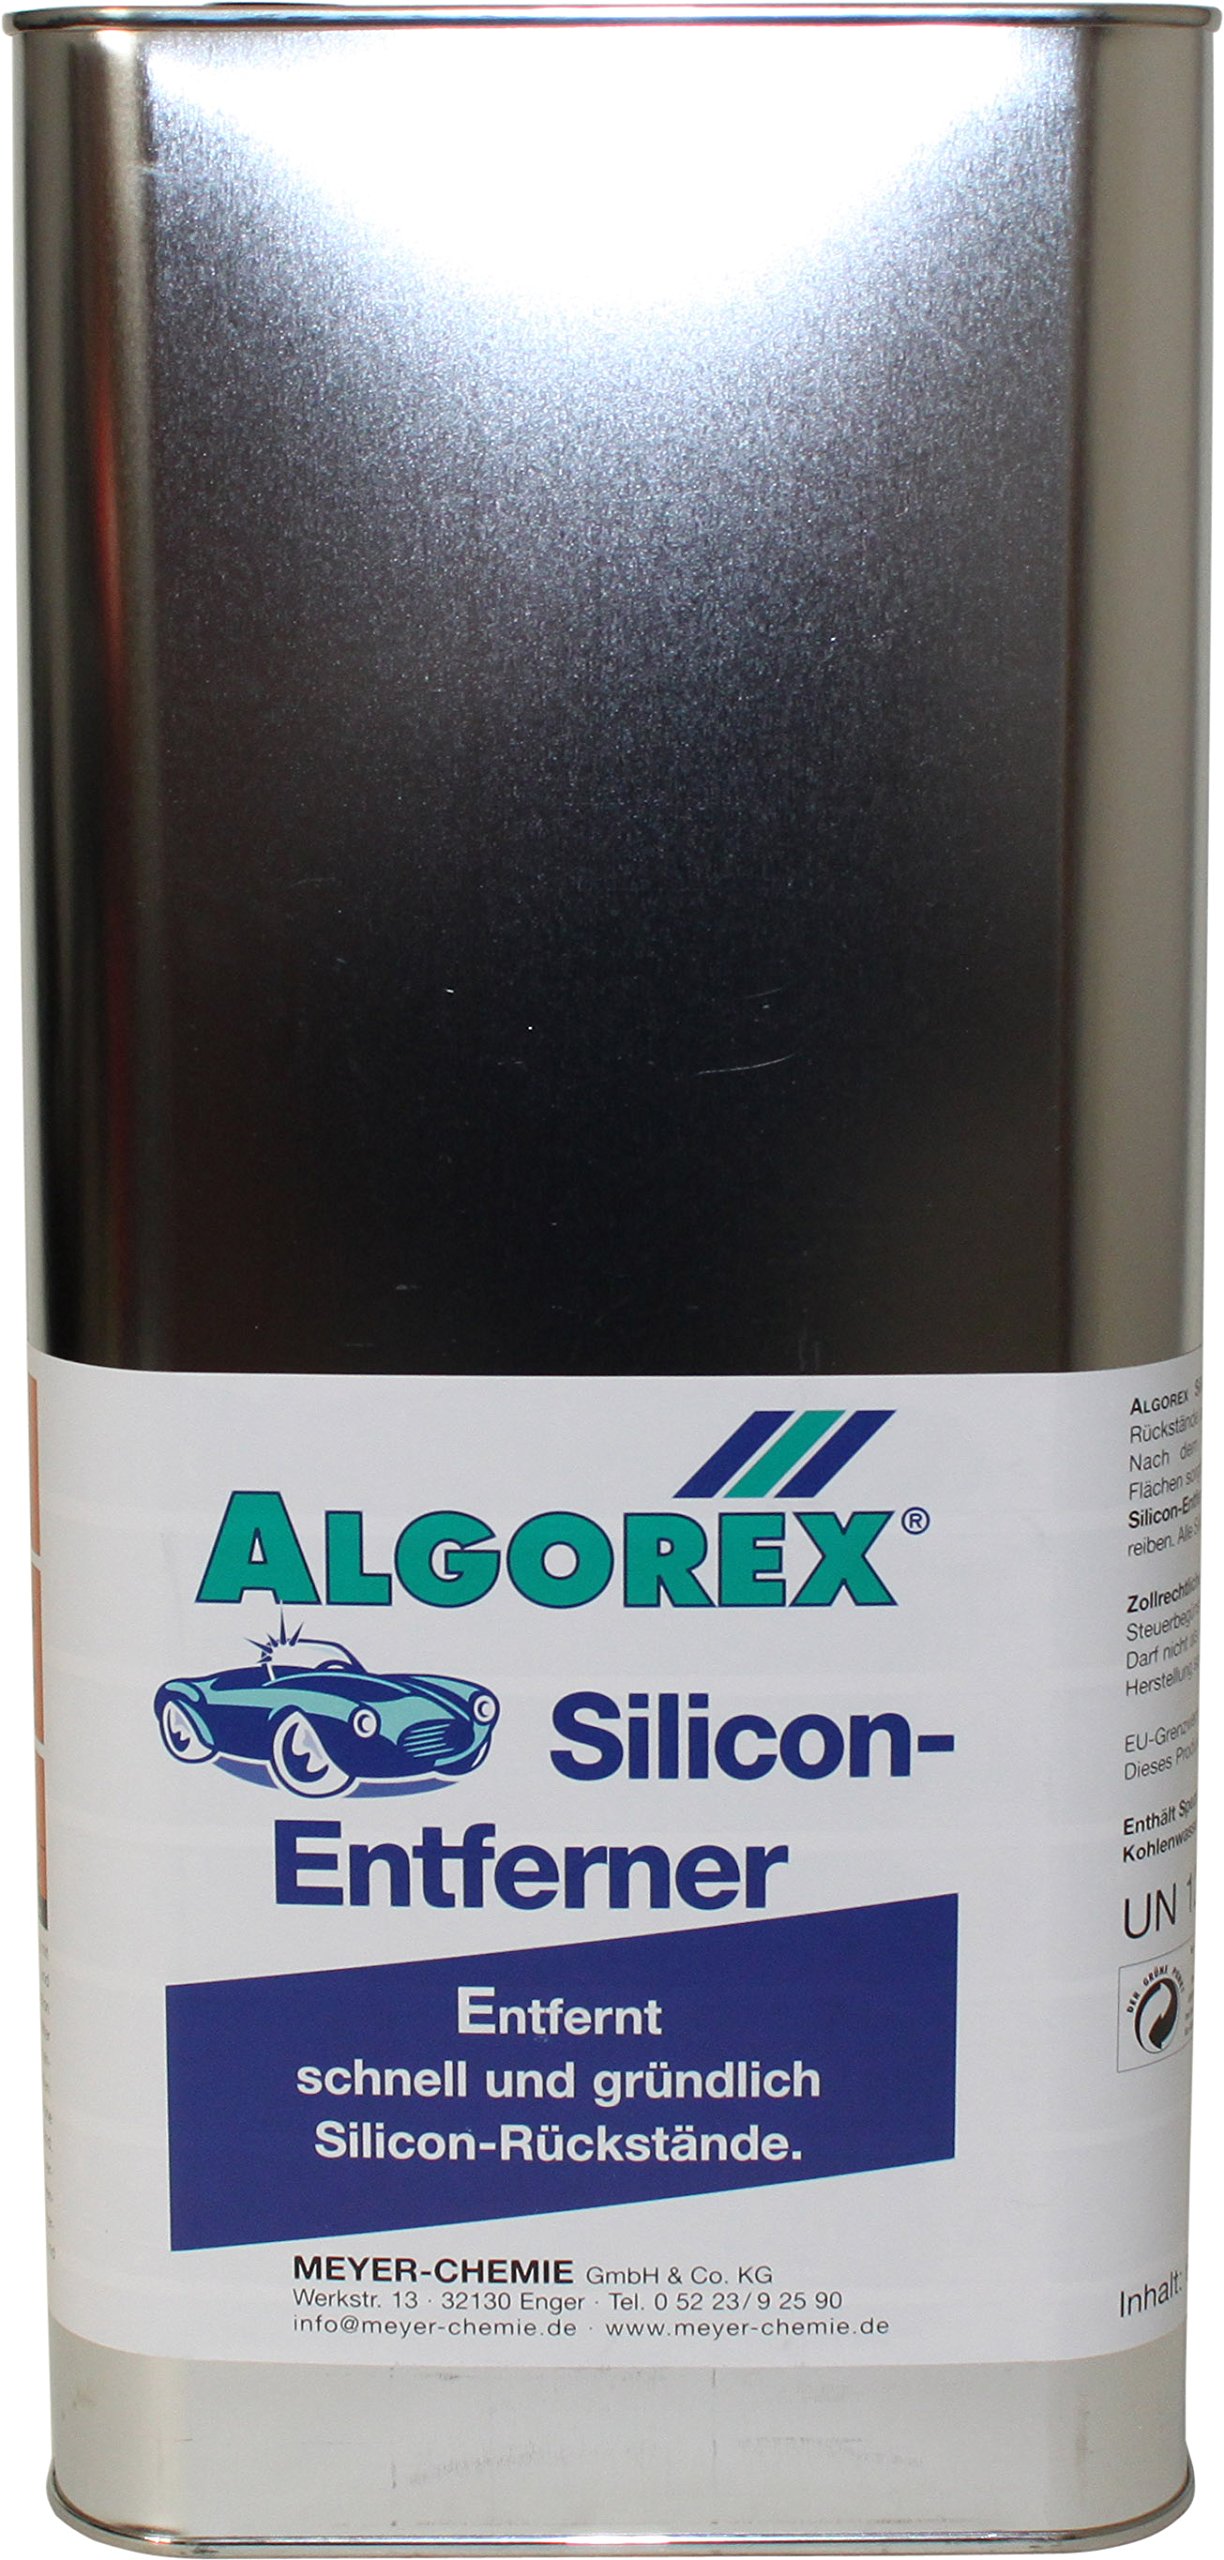 Algorex Silicon-Entferner - 6 Liter von Meyer Chemie